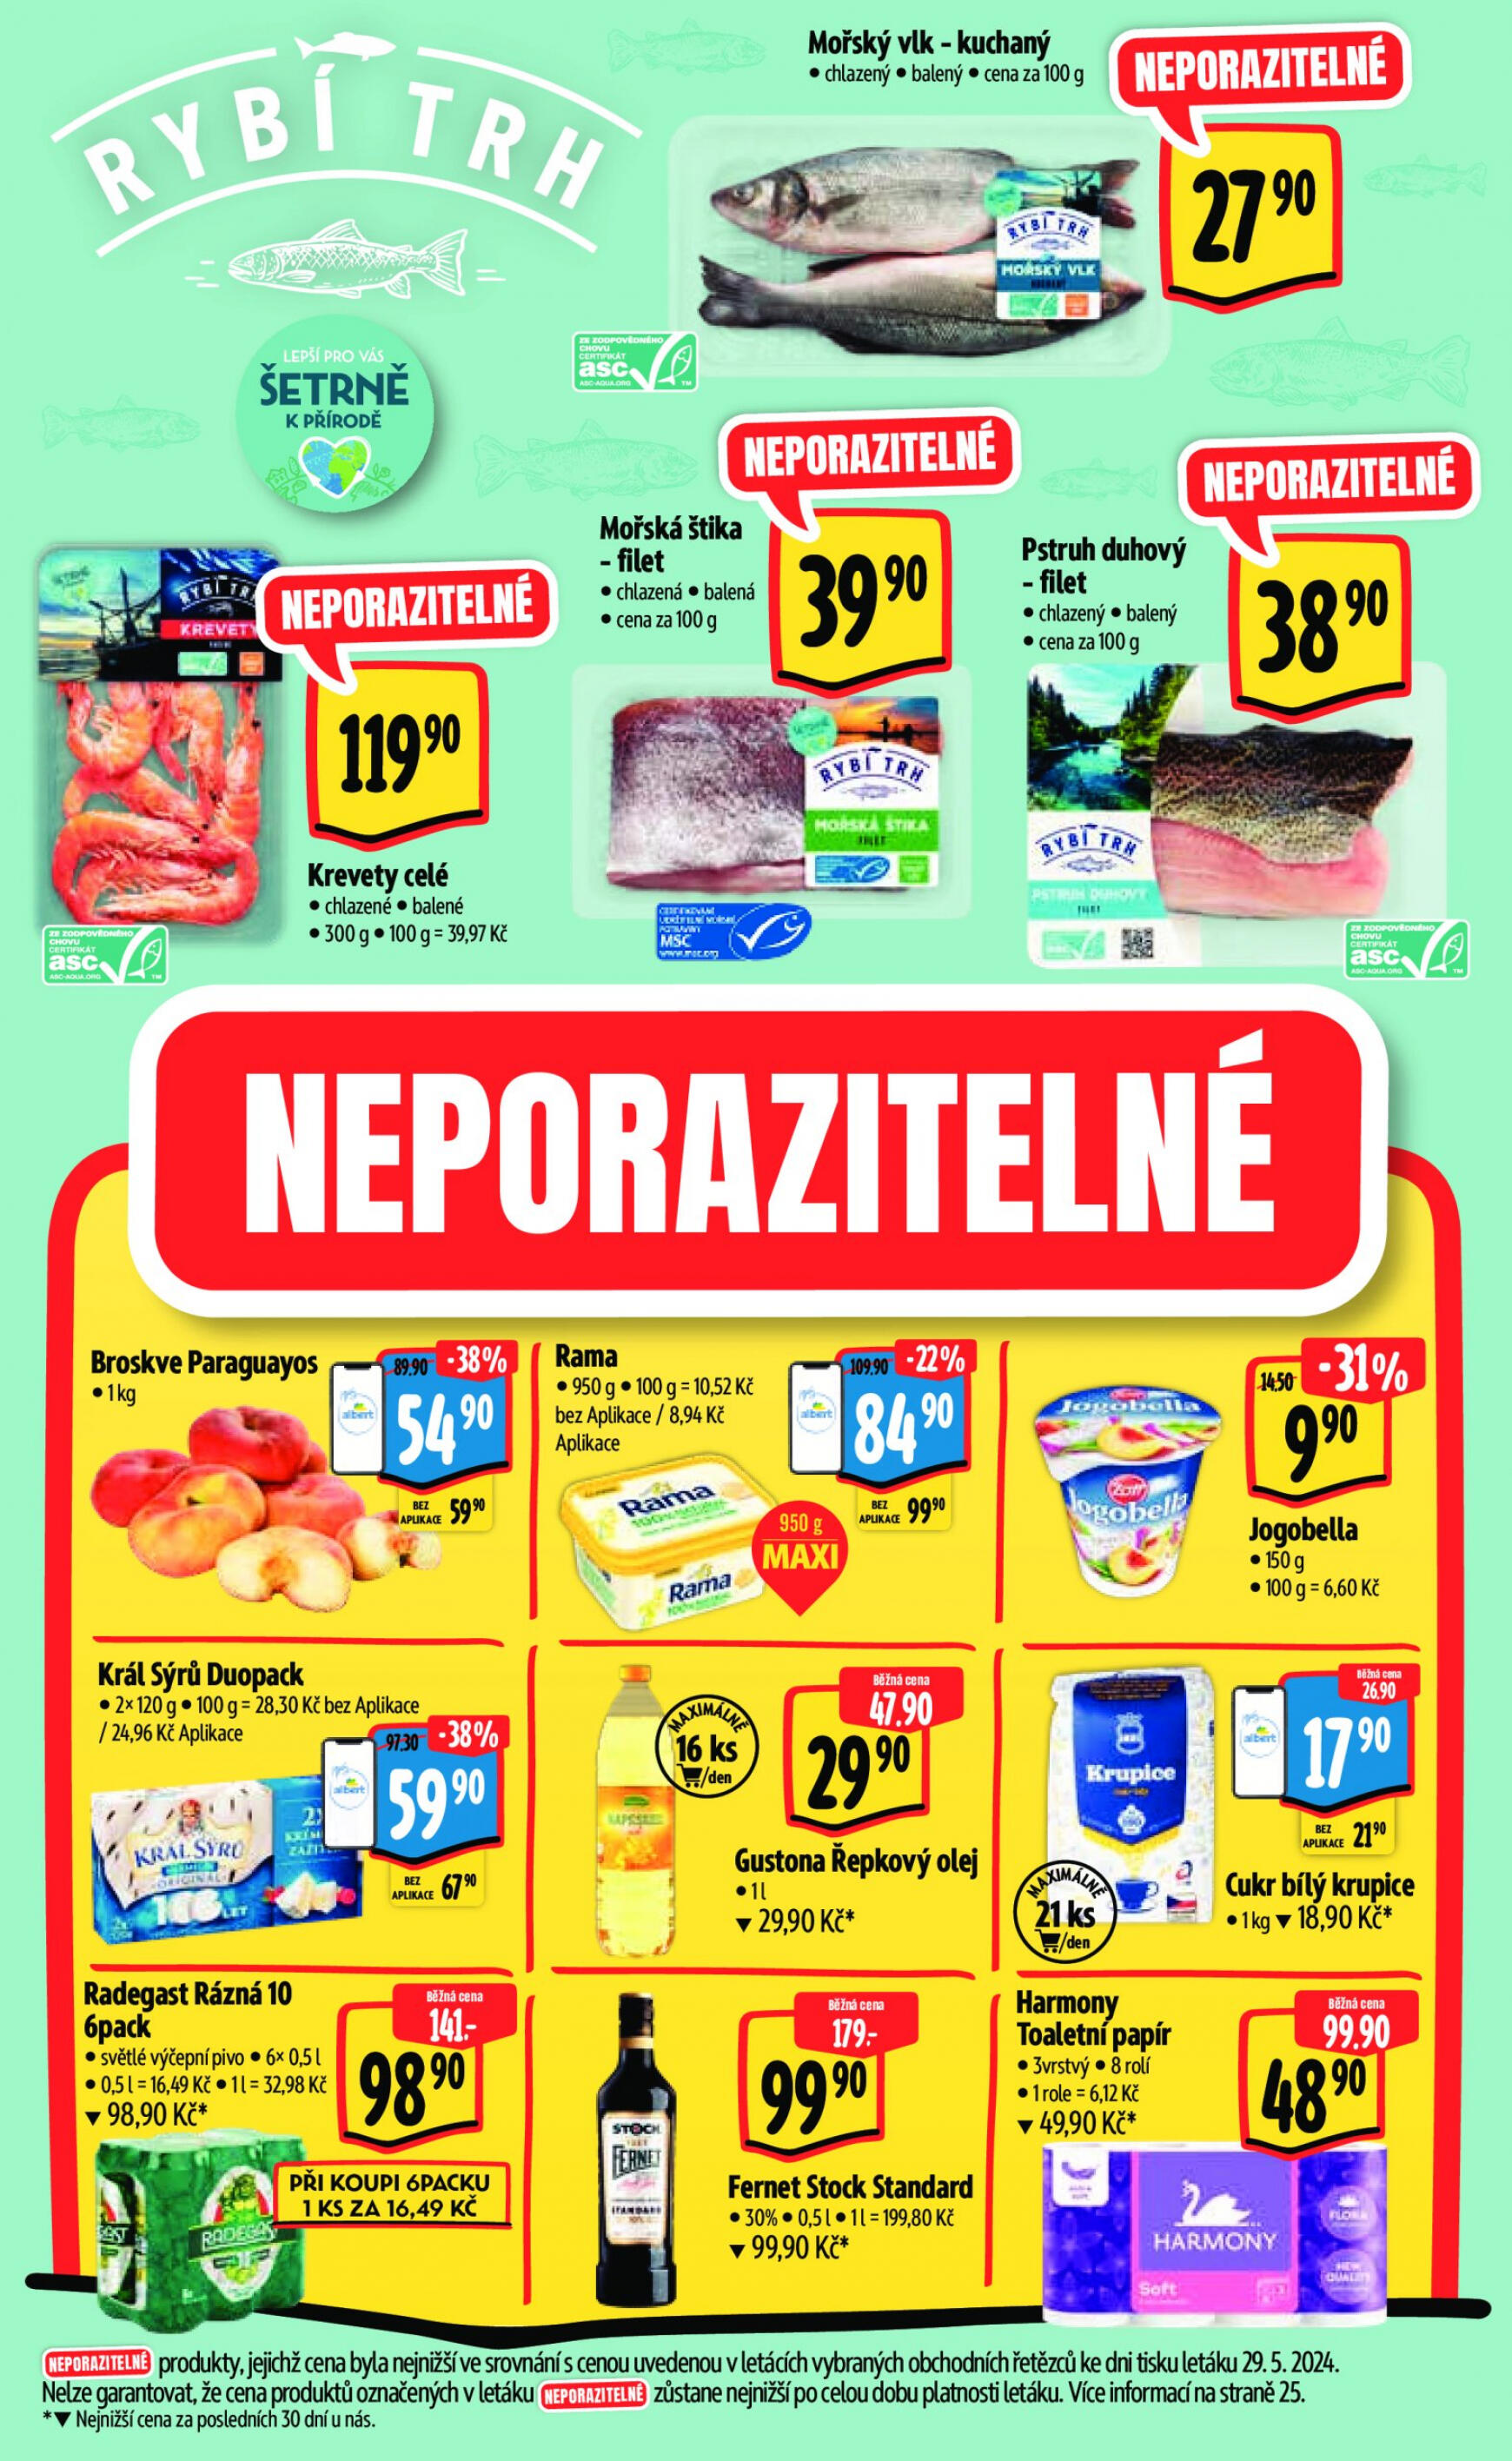 albert - Leták Albert Hypermarket aktuální 05.06. - 11.06. - page: 3